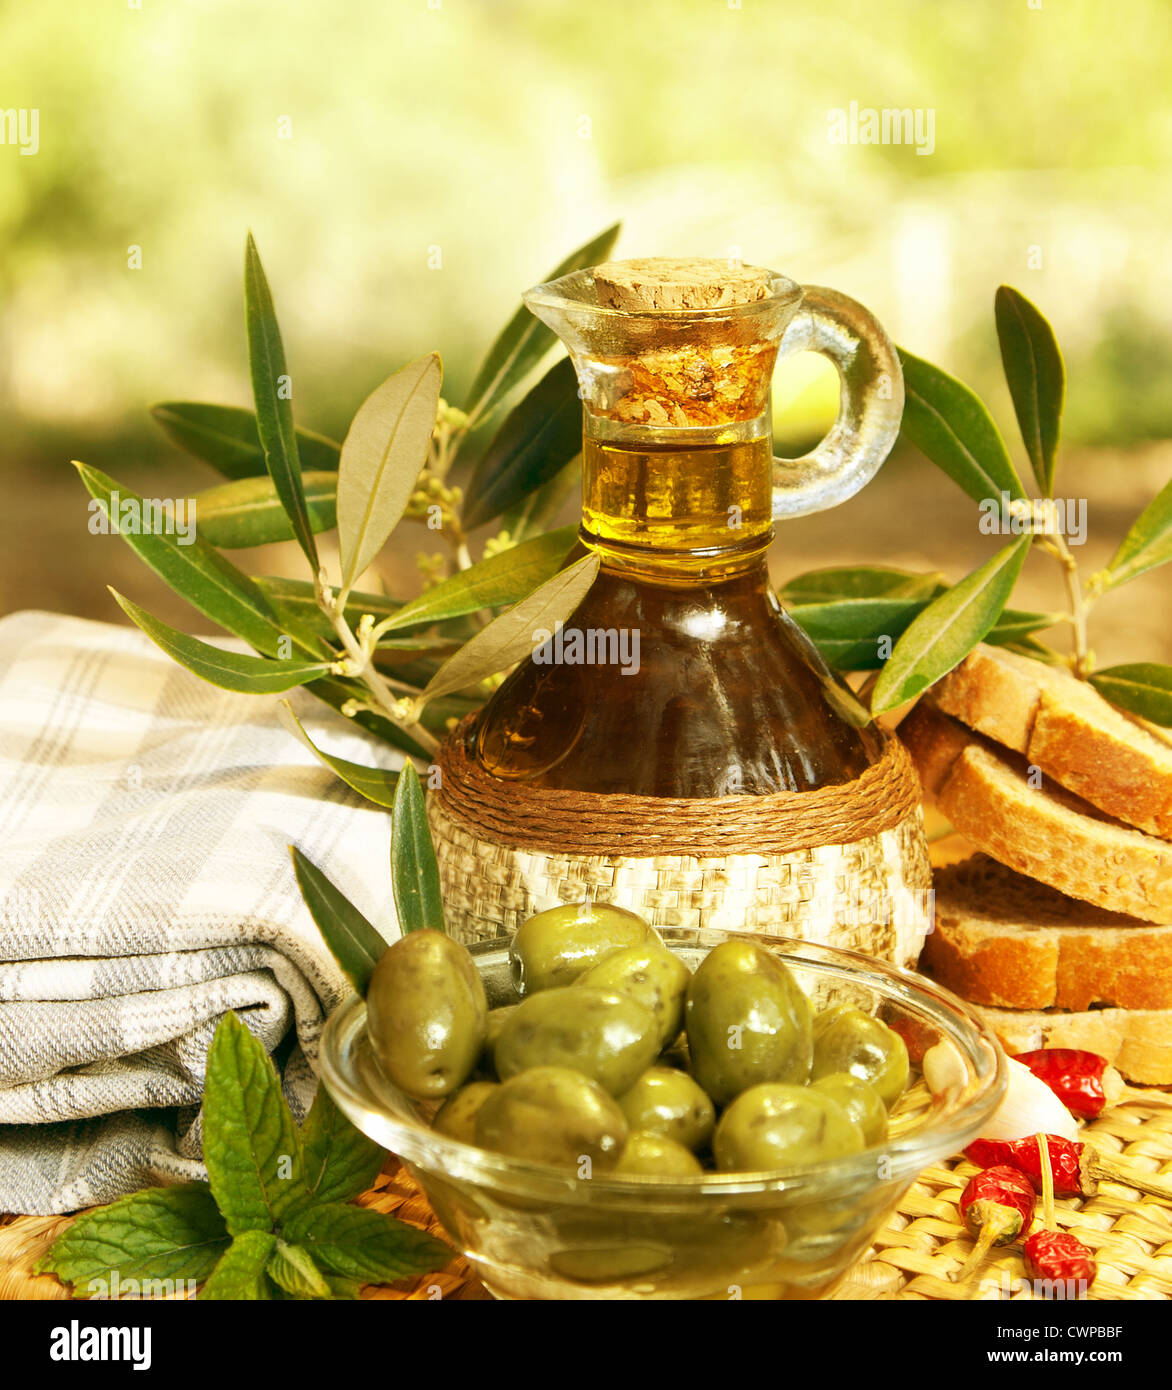 L'huile d'olive dans la bouteille et olives vertes fraîches dans la plaque de verre sur la table, une saine nutrition organique, une cuisine traditionnelle libanaise Banque D'Images